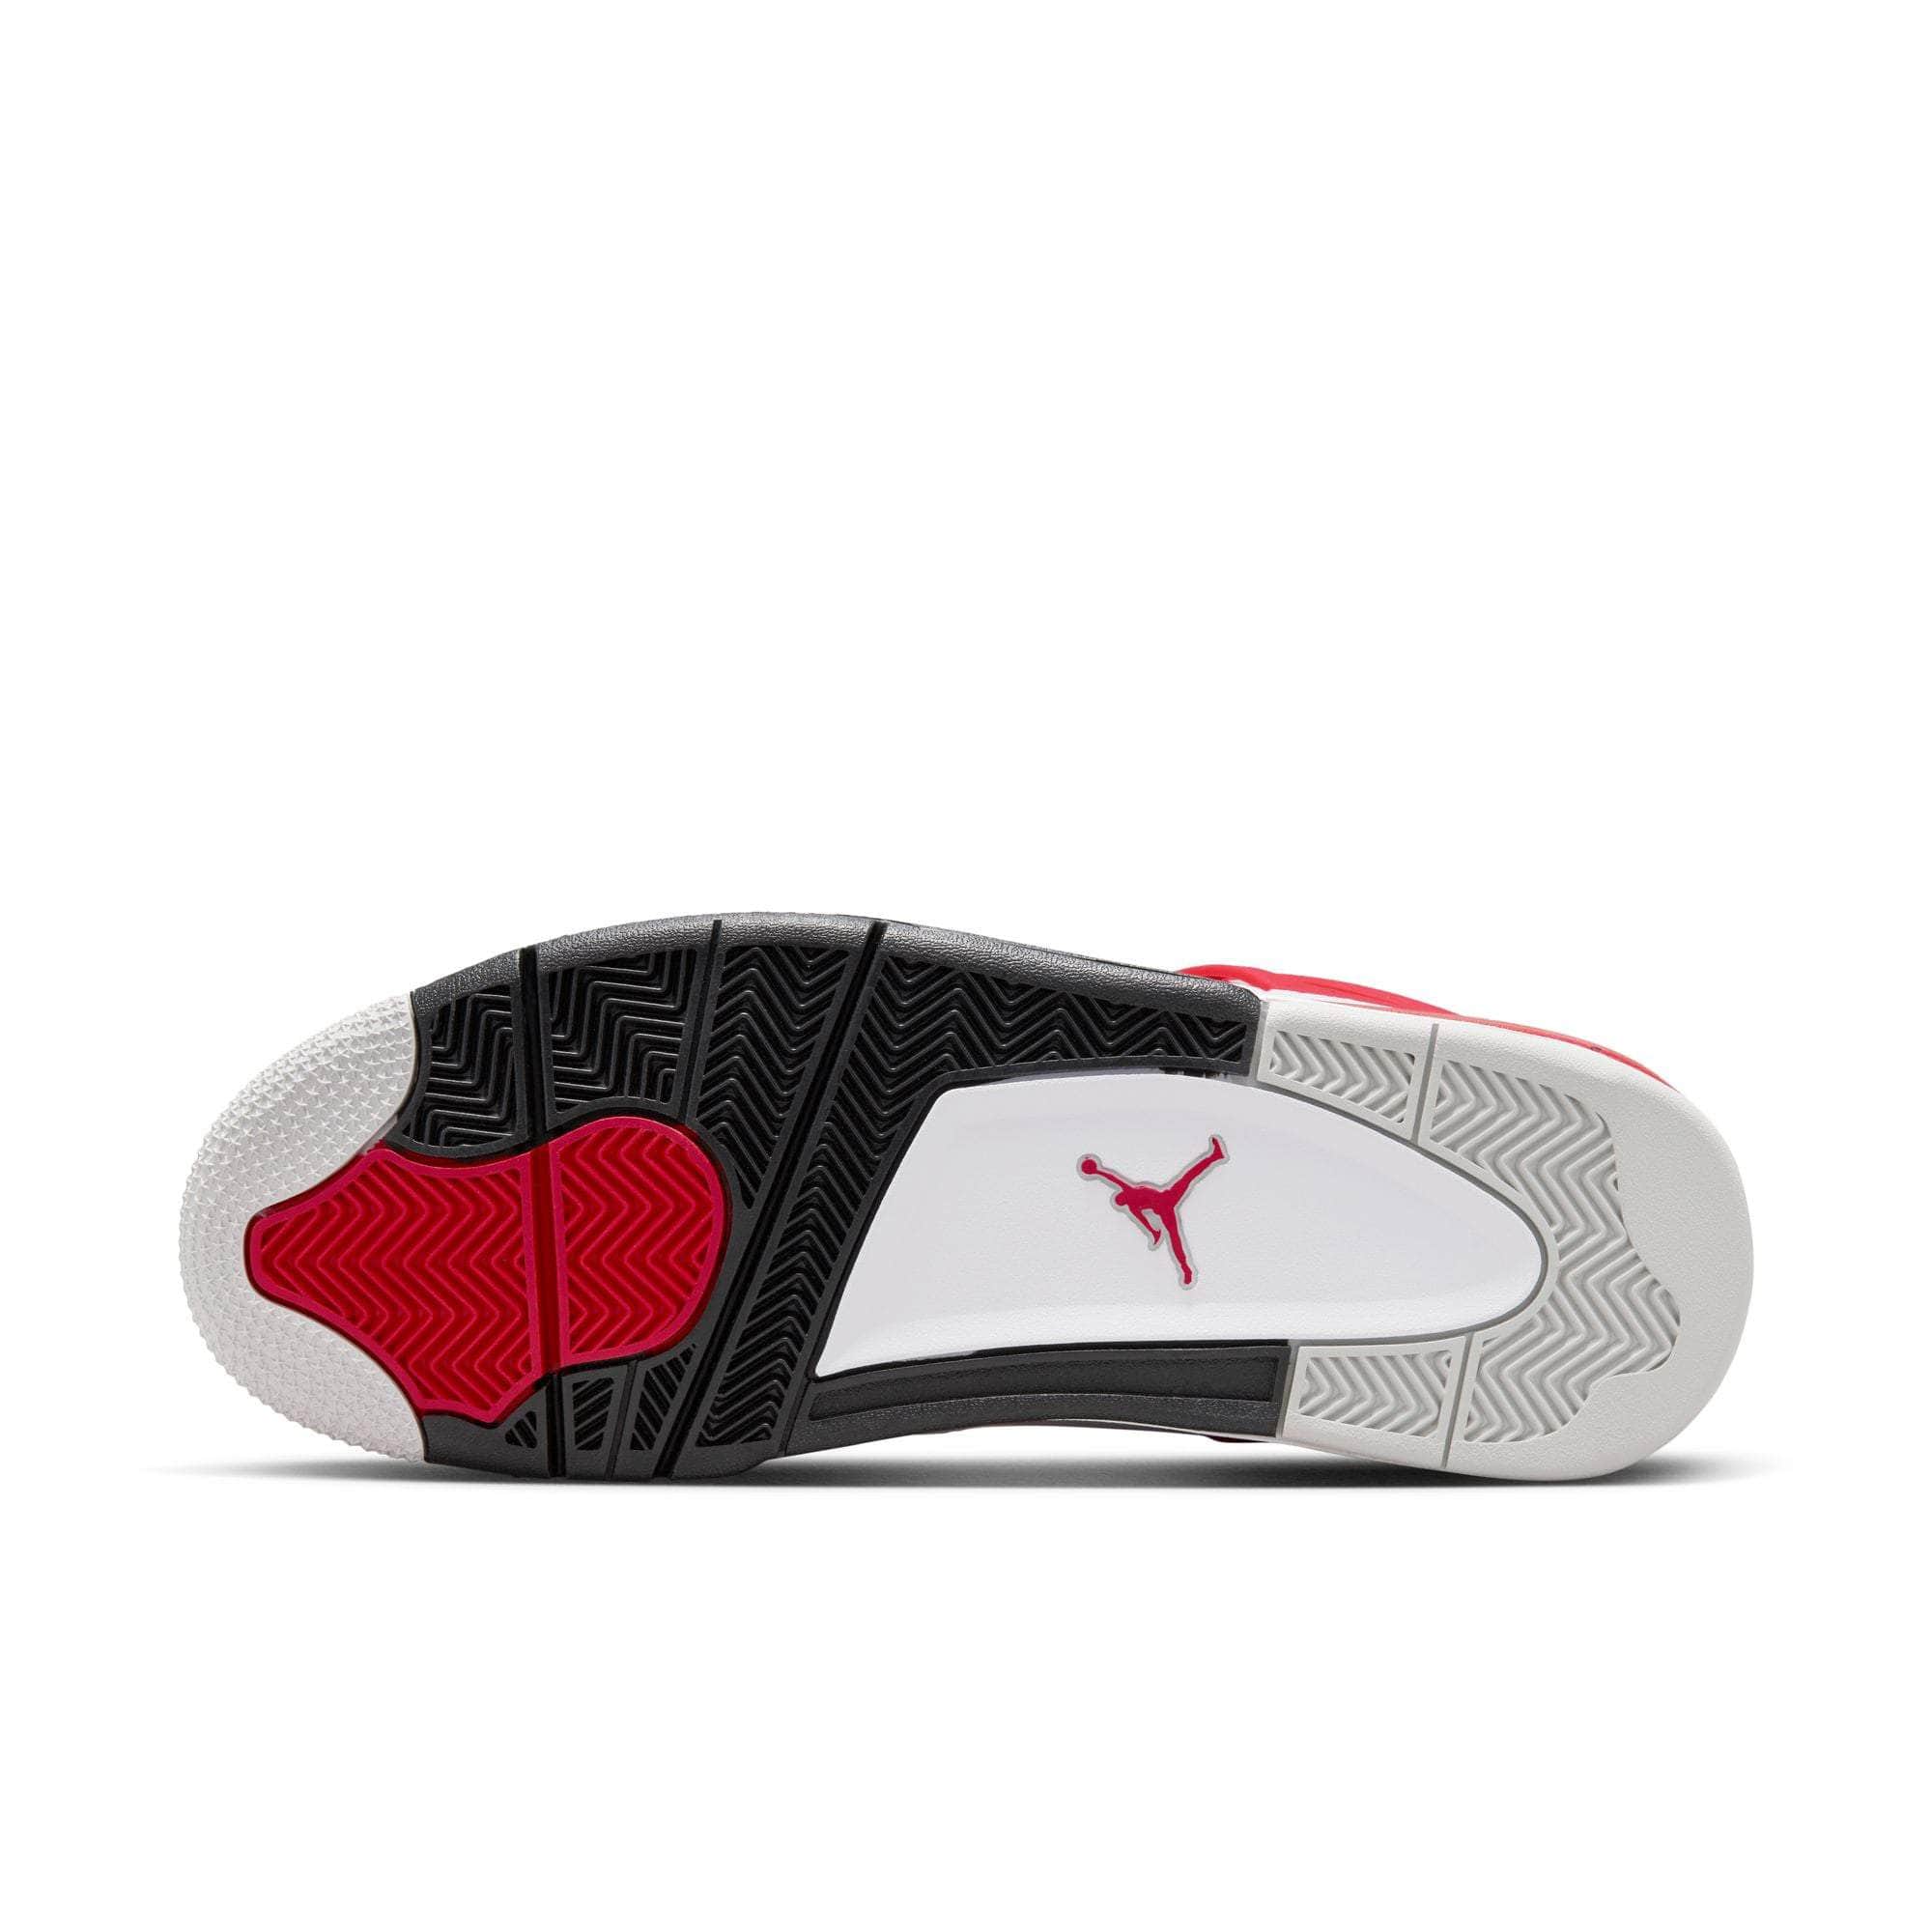 Air Jordan FOOTWEAR Air Jordan 4 Retro "Red Cement" - Men's